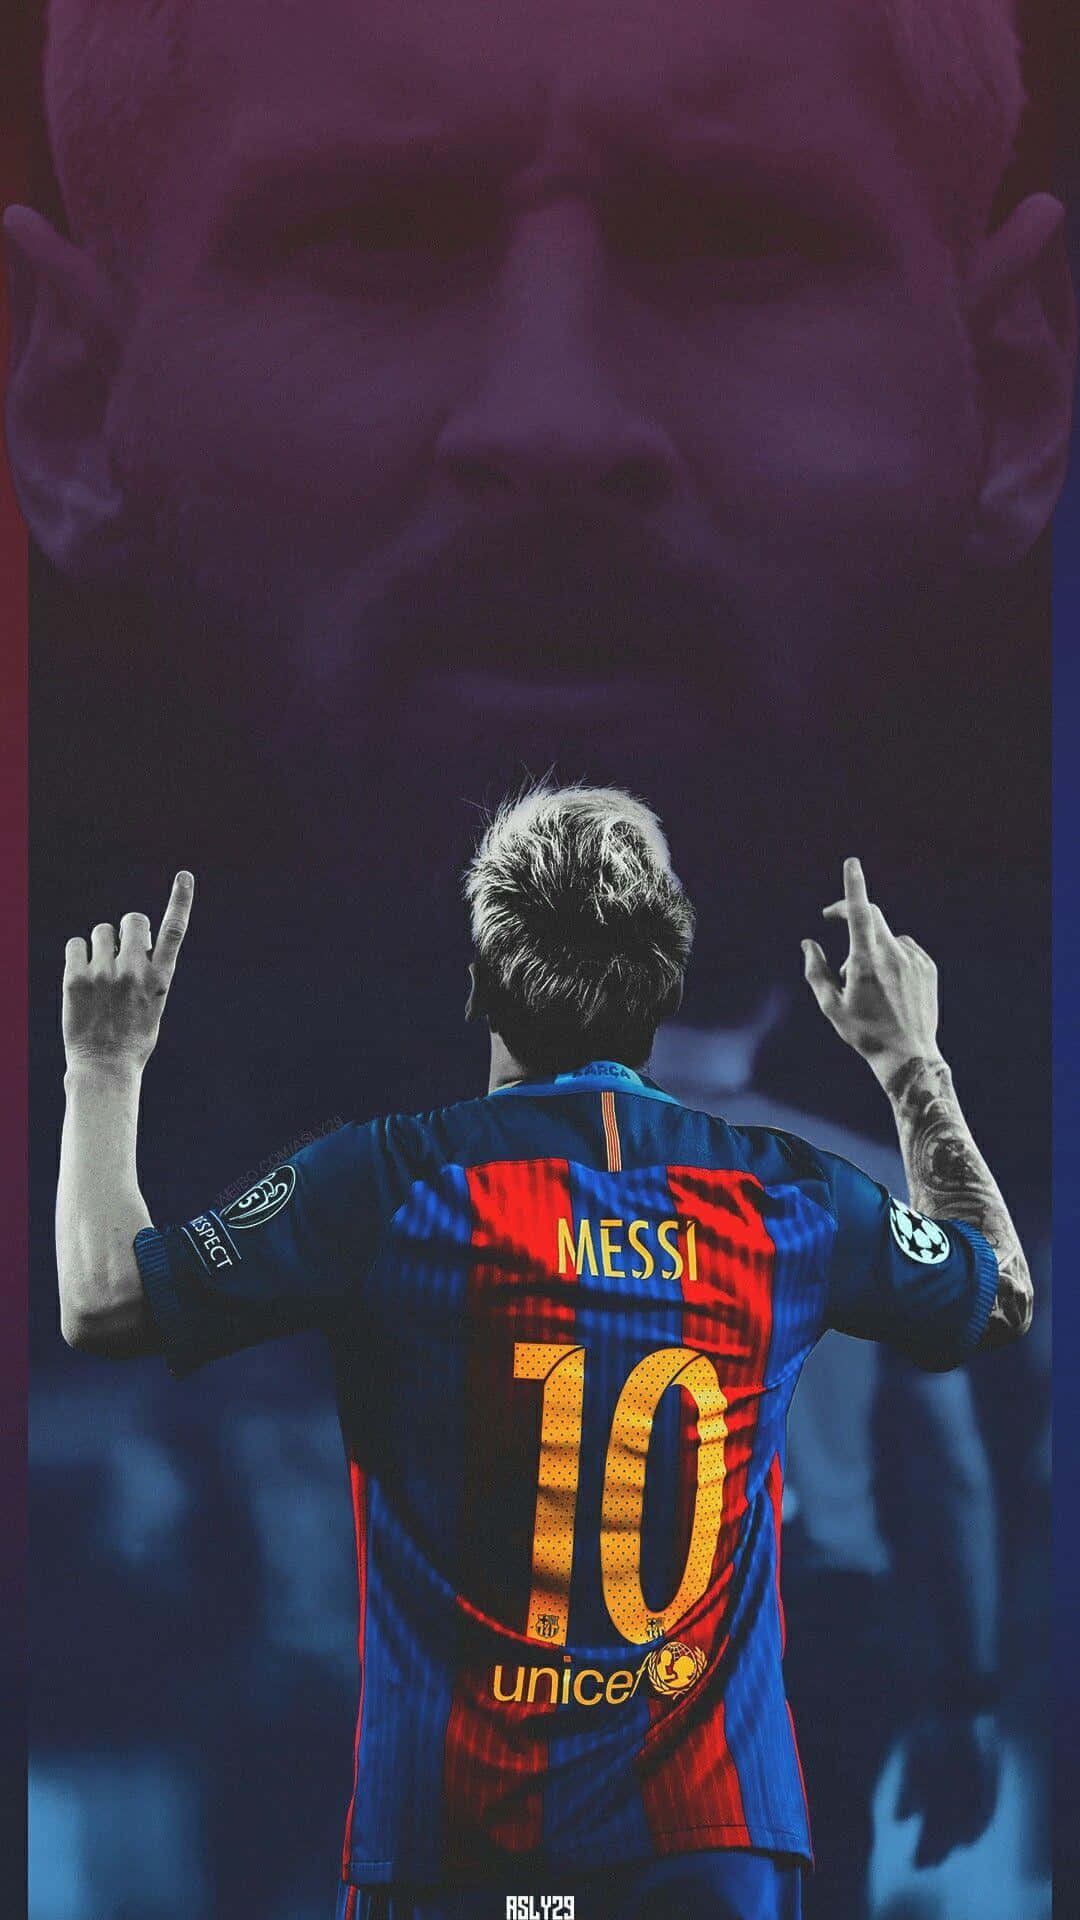 Muốn tải hình nền Messi Iphone miễn phí? Đó chính là điều bạn muốn? Đừng bỏ qua cơ hội này để sở hữu những hình ảnh đẹp nhất của Messi và chia sẻ cùng bạn bè ngay hôm nay. Hãy tải xuống và trải nghiệm hình nền tuyệt vời này.